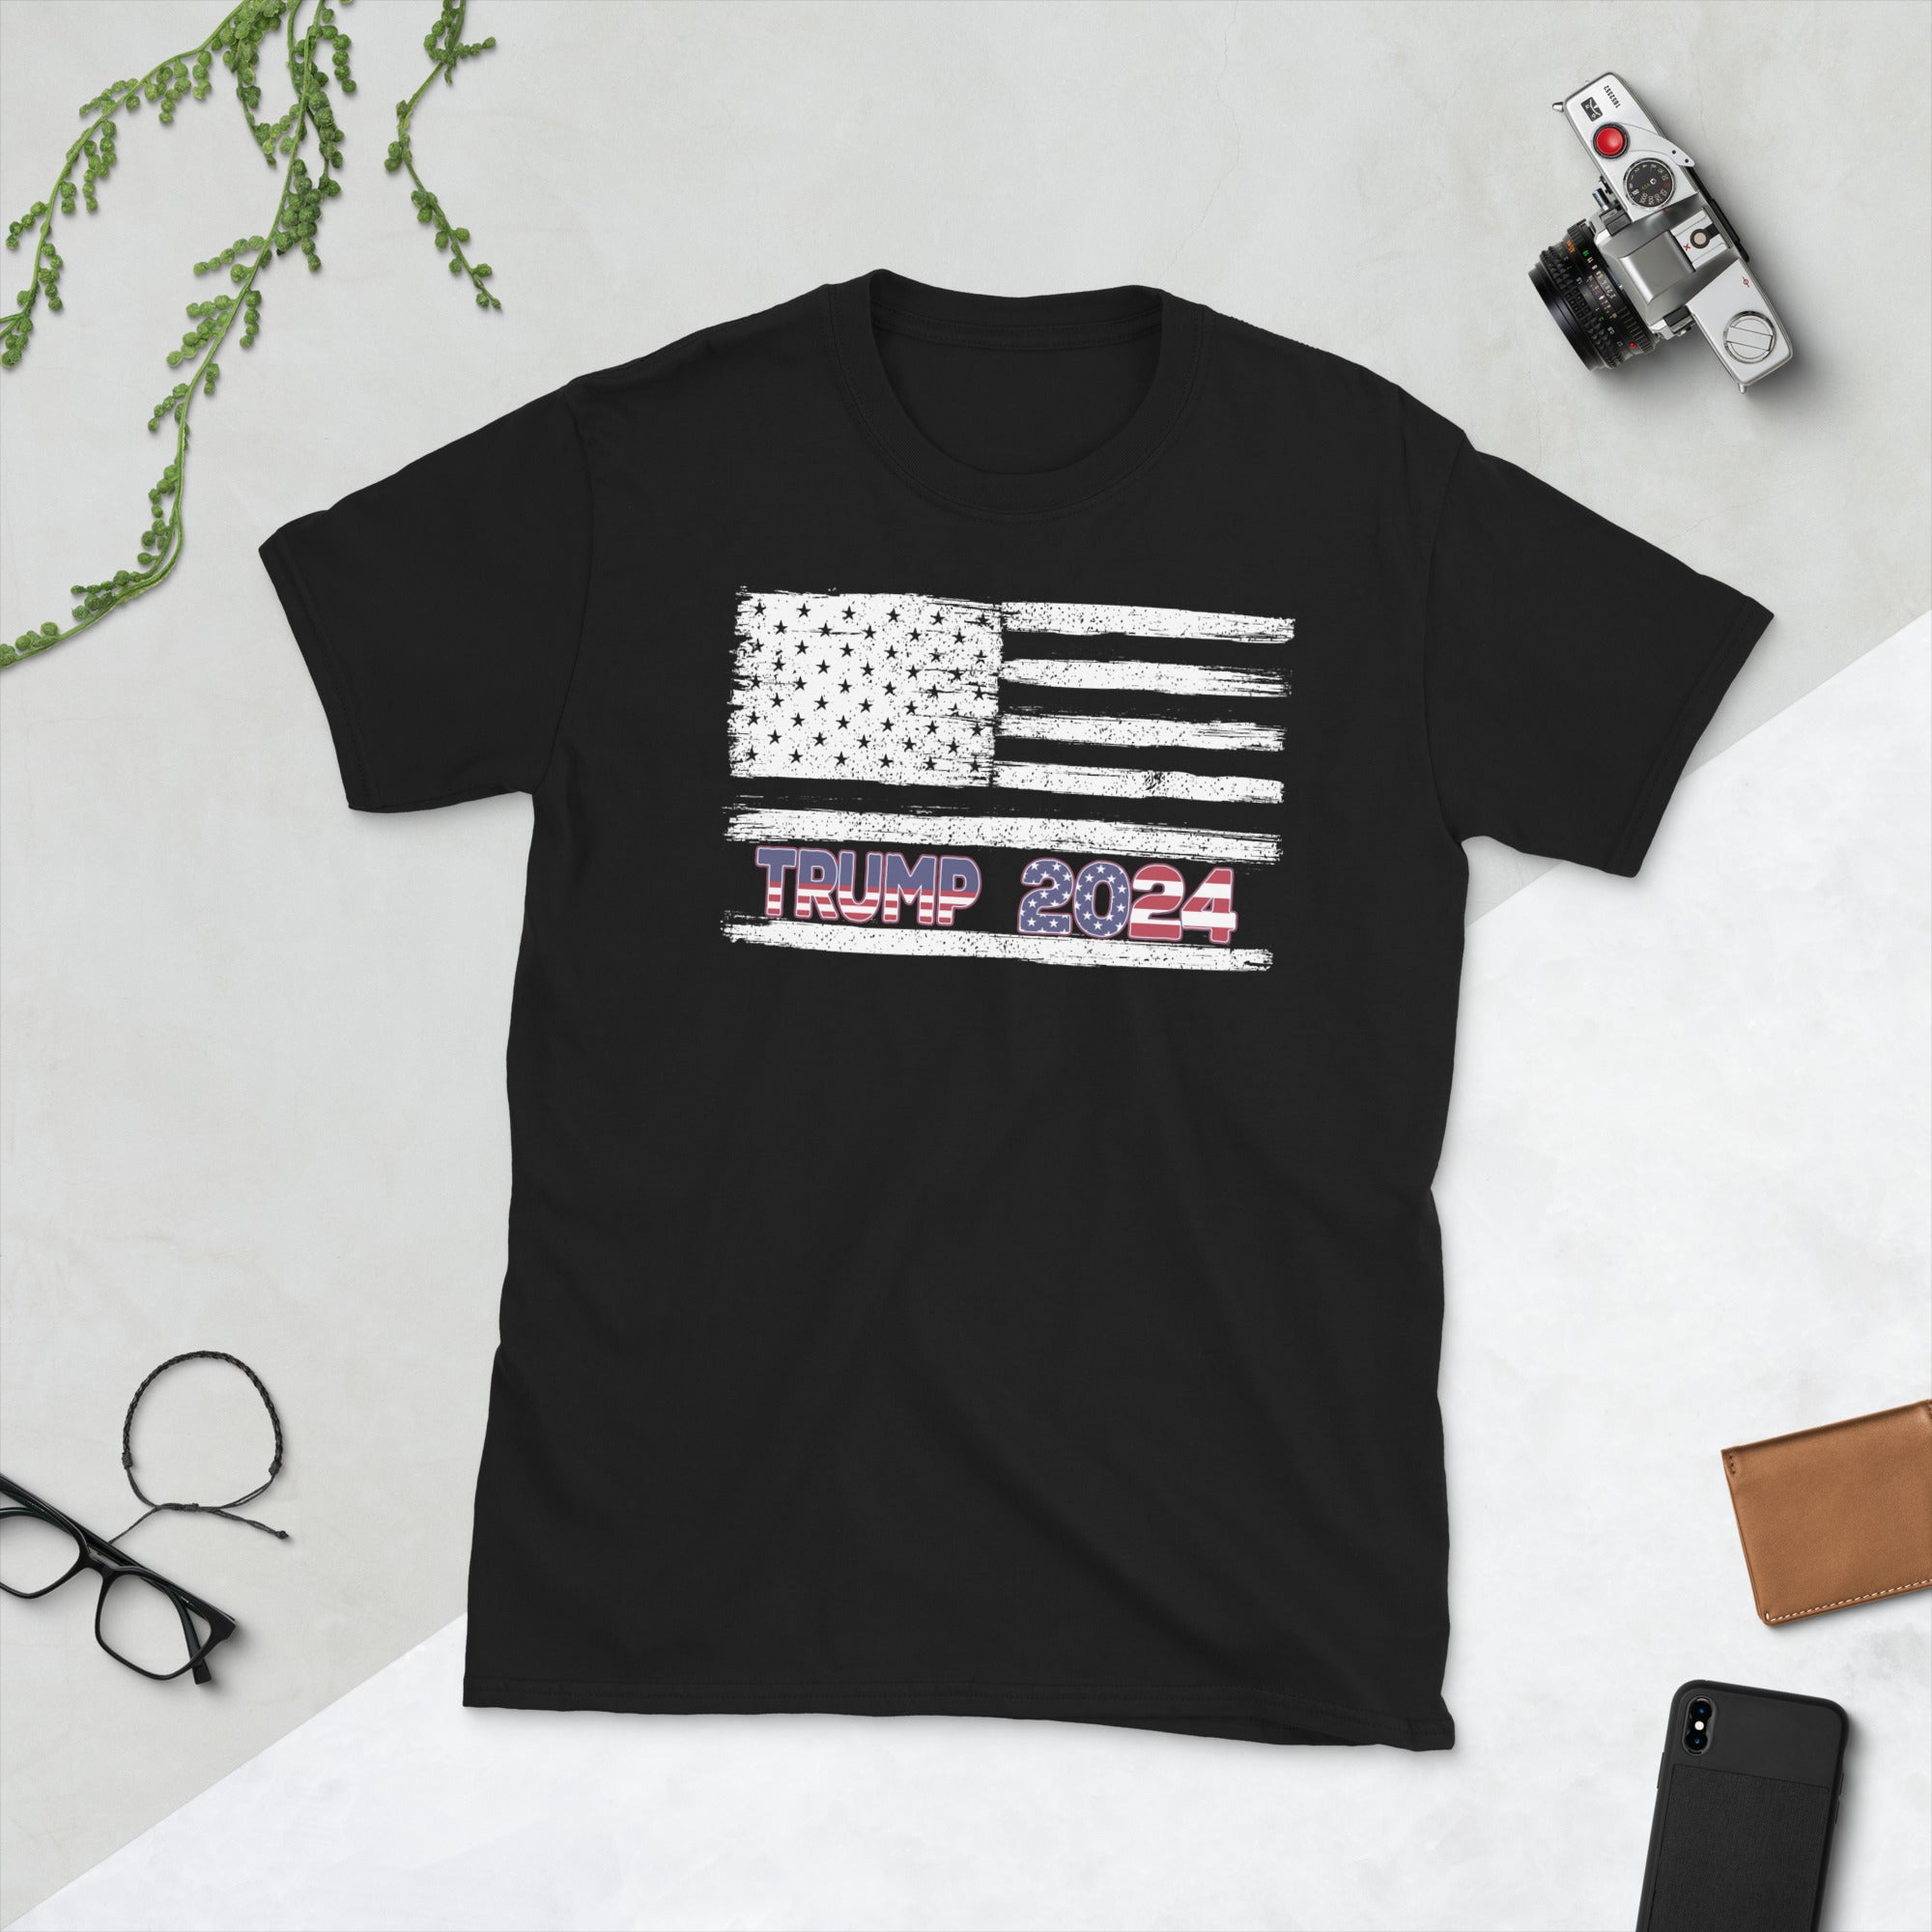 Camisa Trump 2024, camiseta con la bandera estadounidense de EE. UU., regalos patrióticos, camisa republicana, camiseta MAGA Trump 2024, regalos Pro Trump, camiseta de regalo Trump 2024